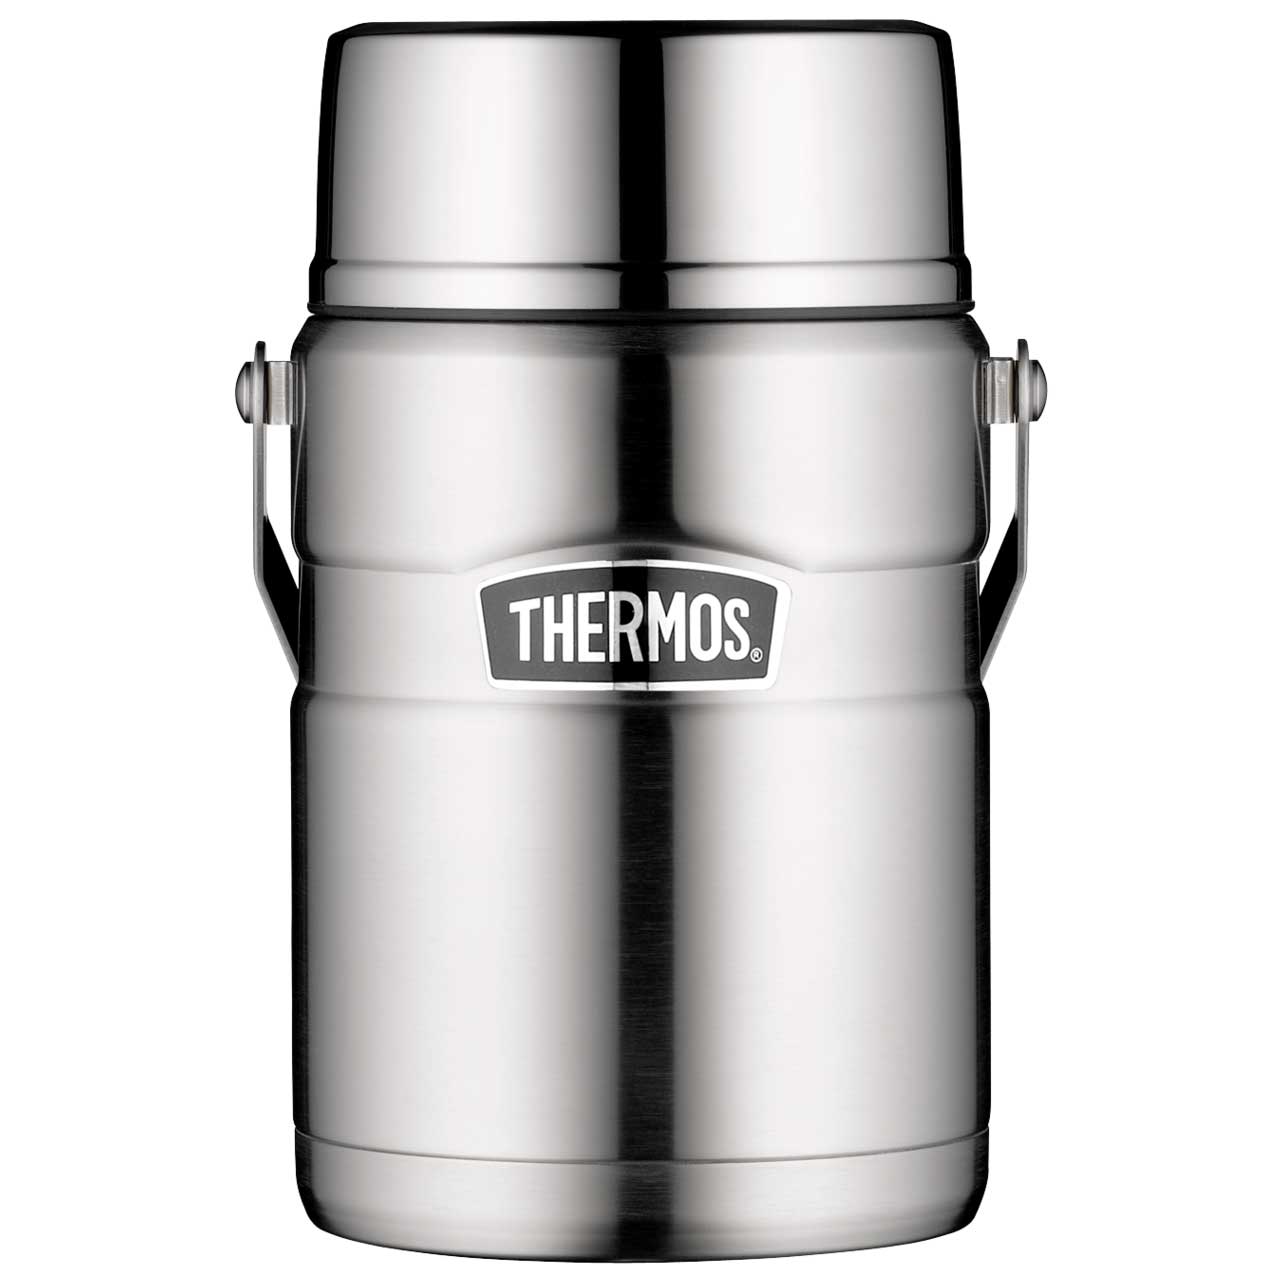 Produktbild von THERMOS® Stainless King Food Jar 1.2L Isolier-Speisegefäß - stainless steel mat